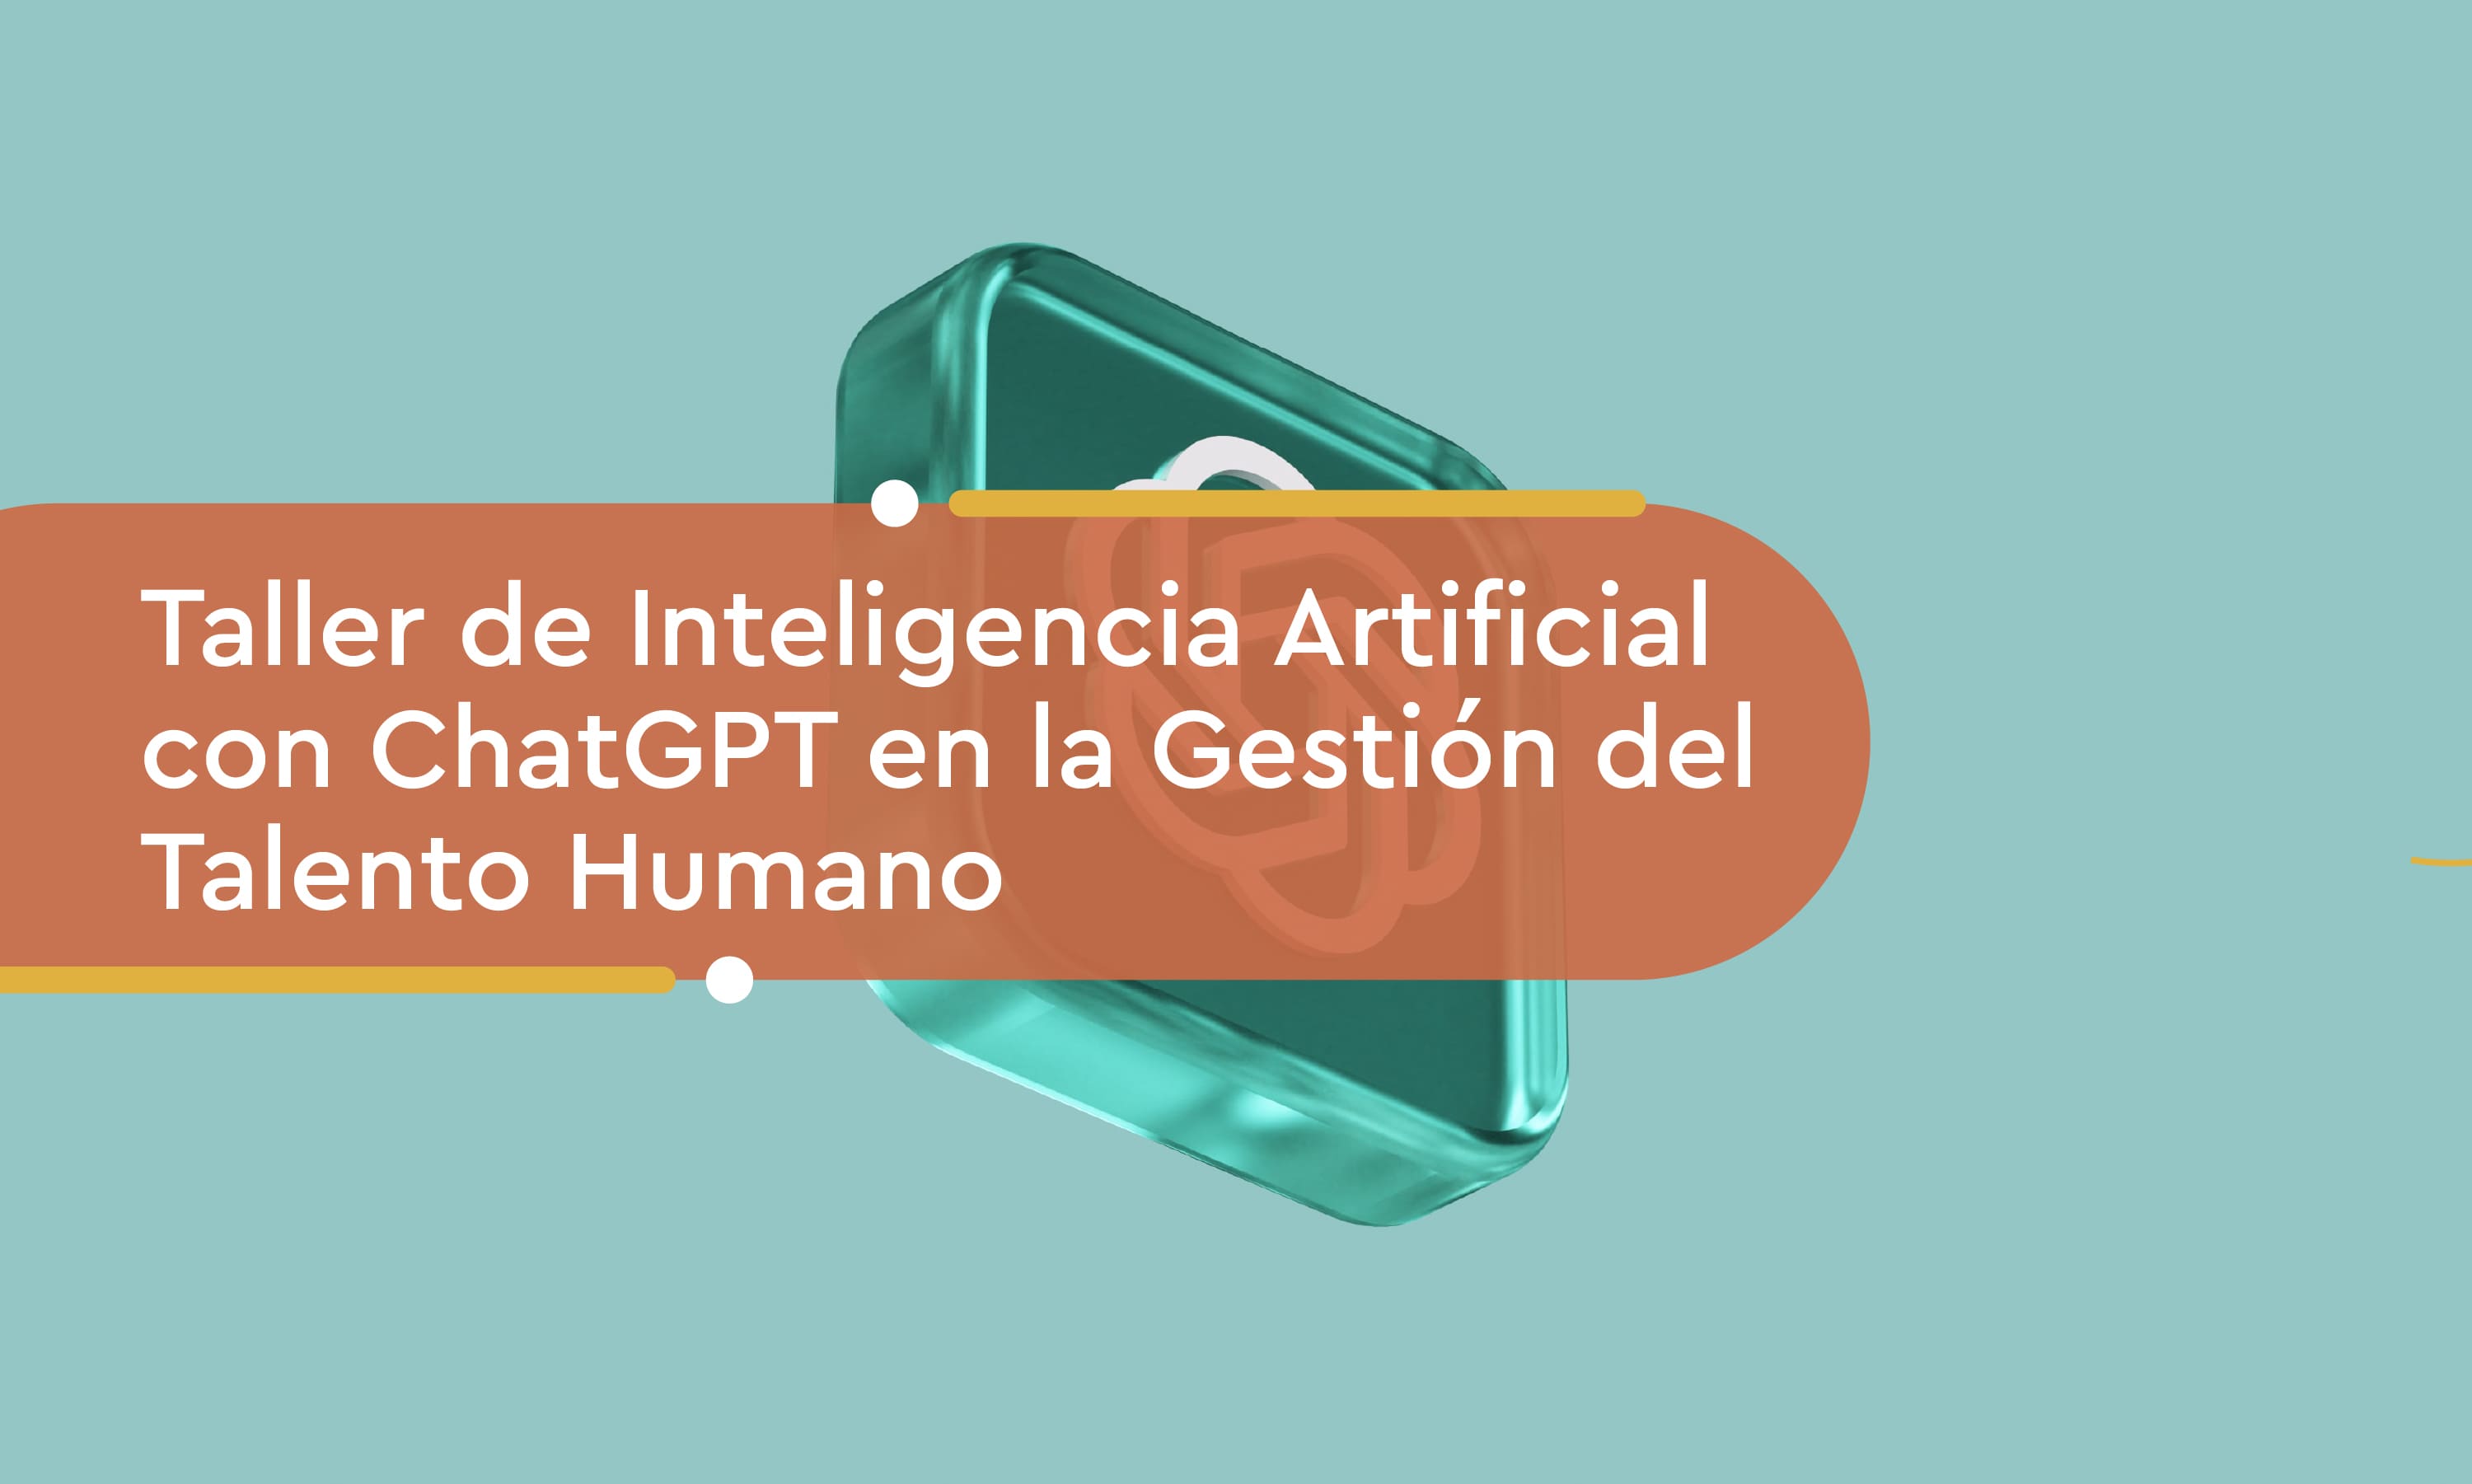 Taller de Inteligencia Artificial con ChatGPT en la Gestión del Talento Humano